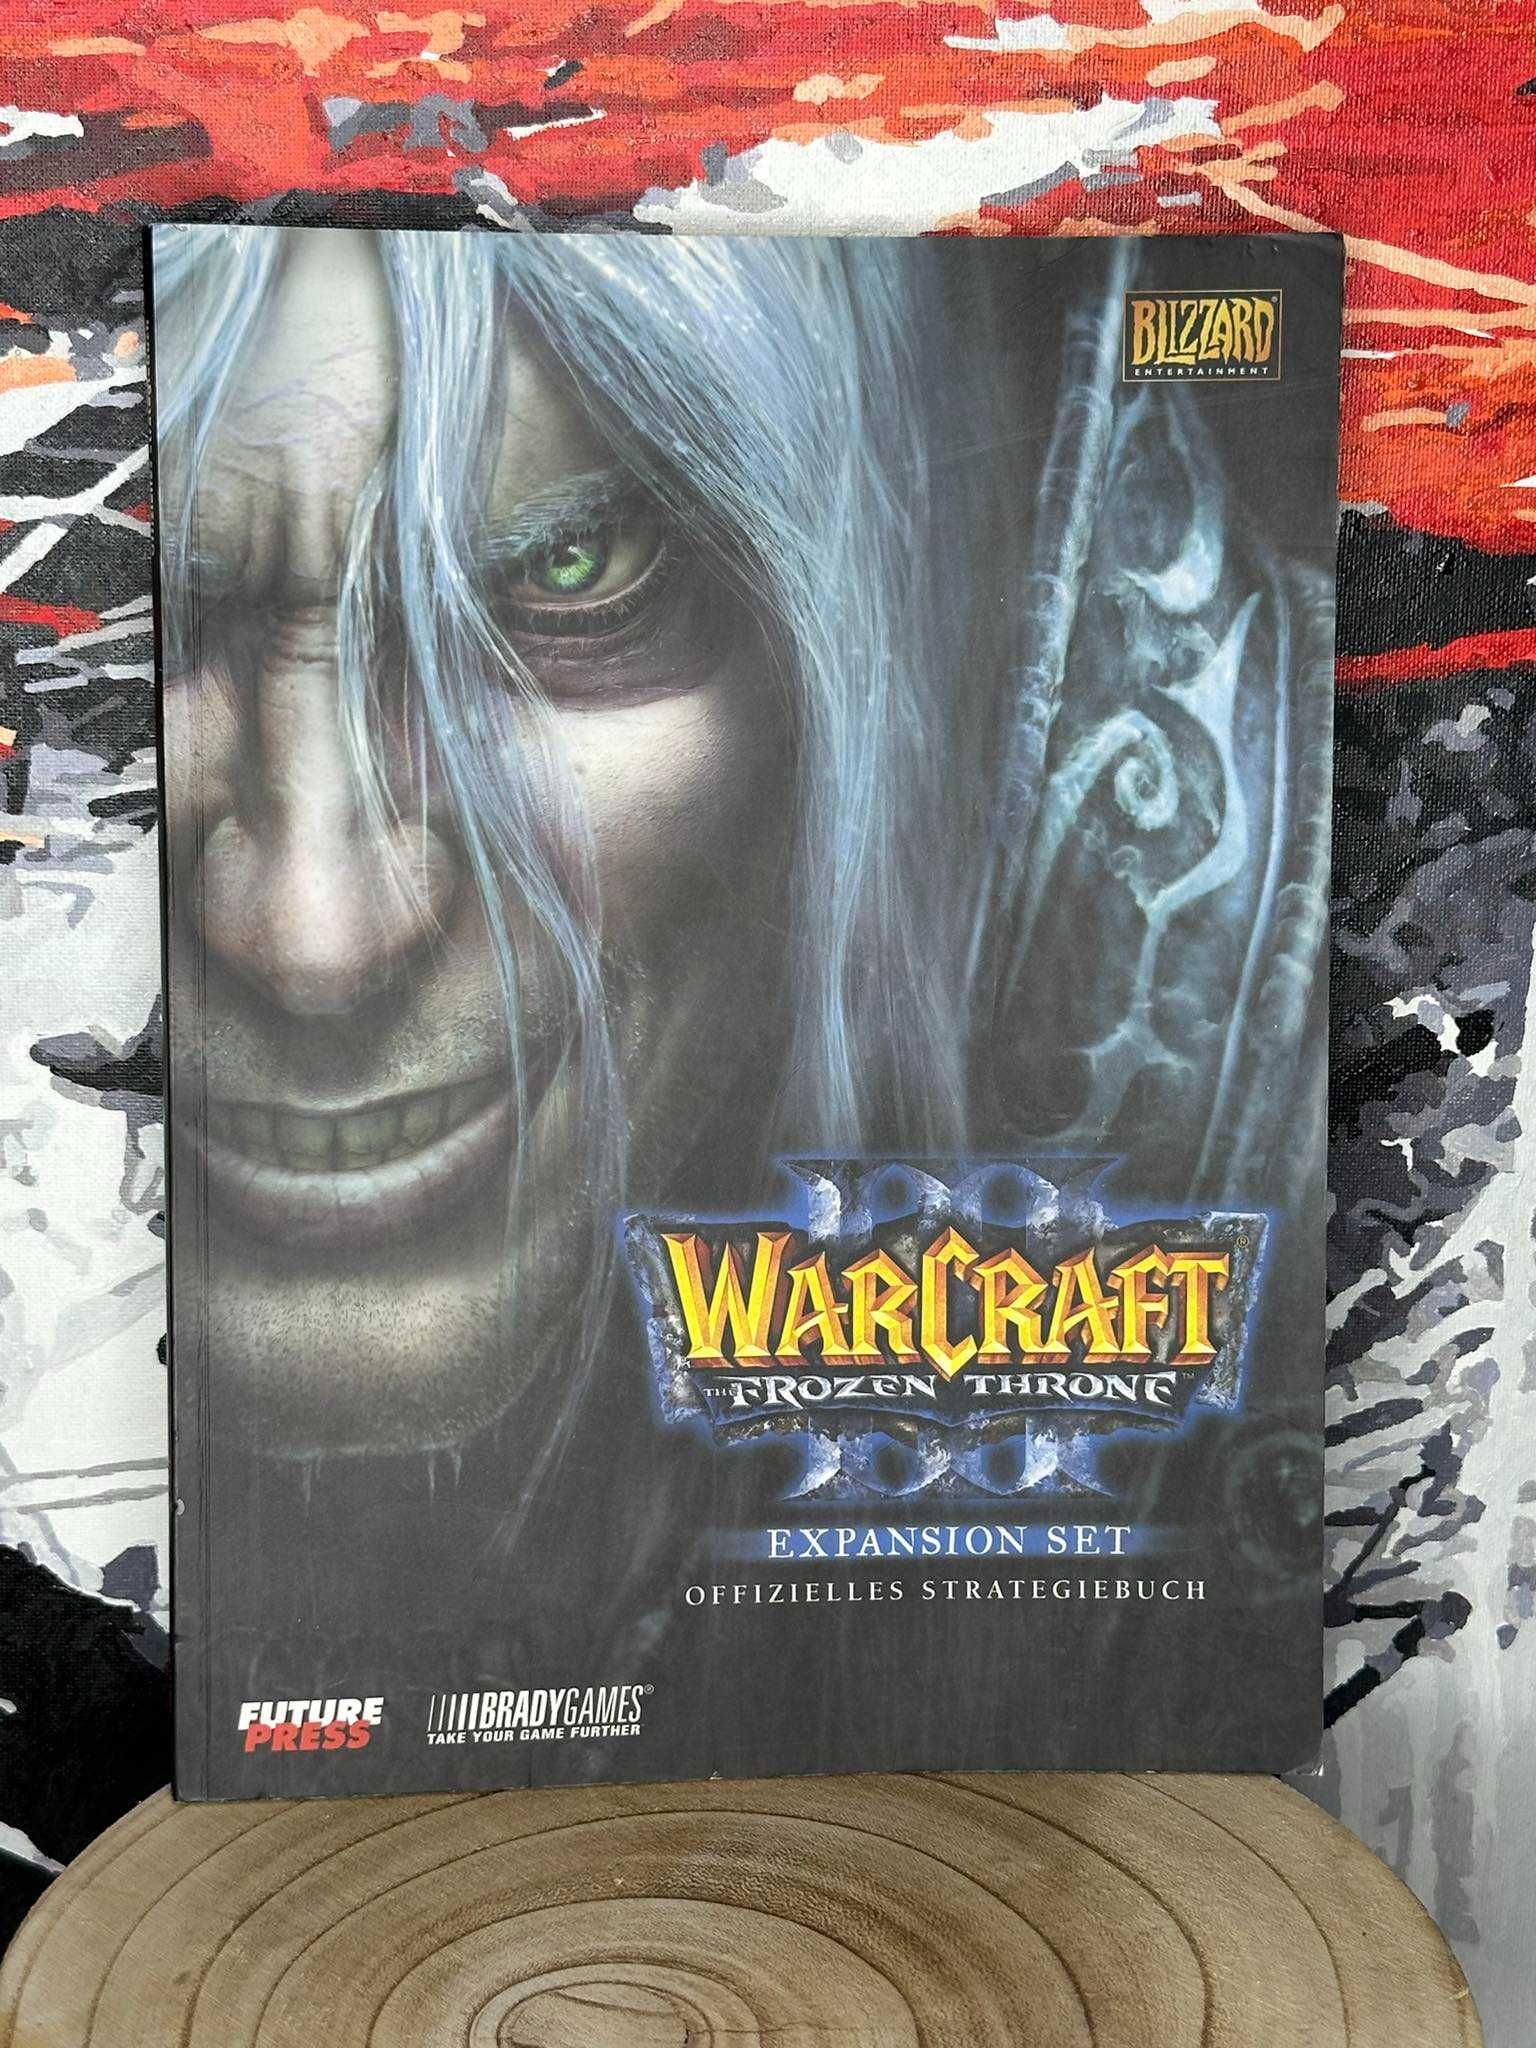 Warcraft III 3 Frozen Throne - poradnik duży gruby - unikat - JAK NOWY